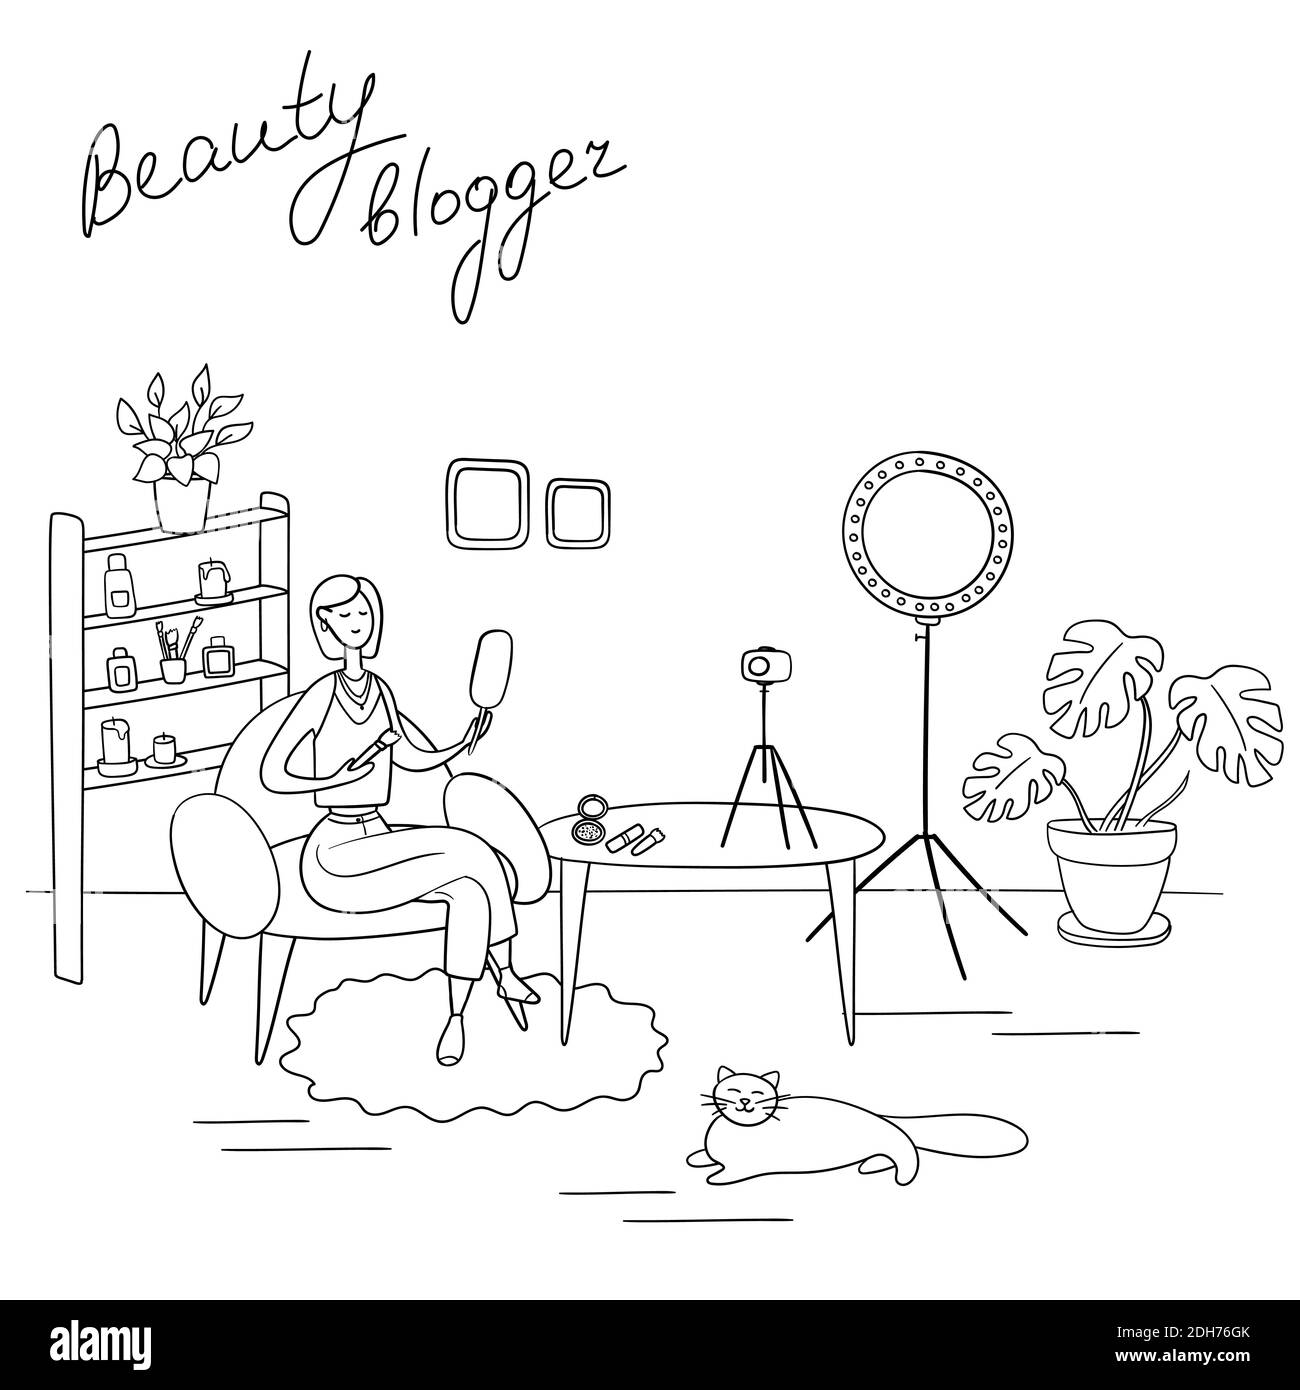 Beauty-Blogger. Junge Frau nimmt Video auf. Makeup-Künstlerin reviews Kosmetik auf ihrem Blog. Handgezeichnete Vektorgrafik im Cartoon-Stil Stock Vektor